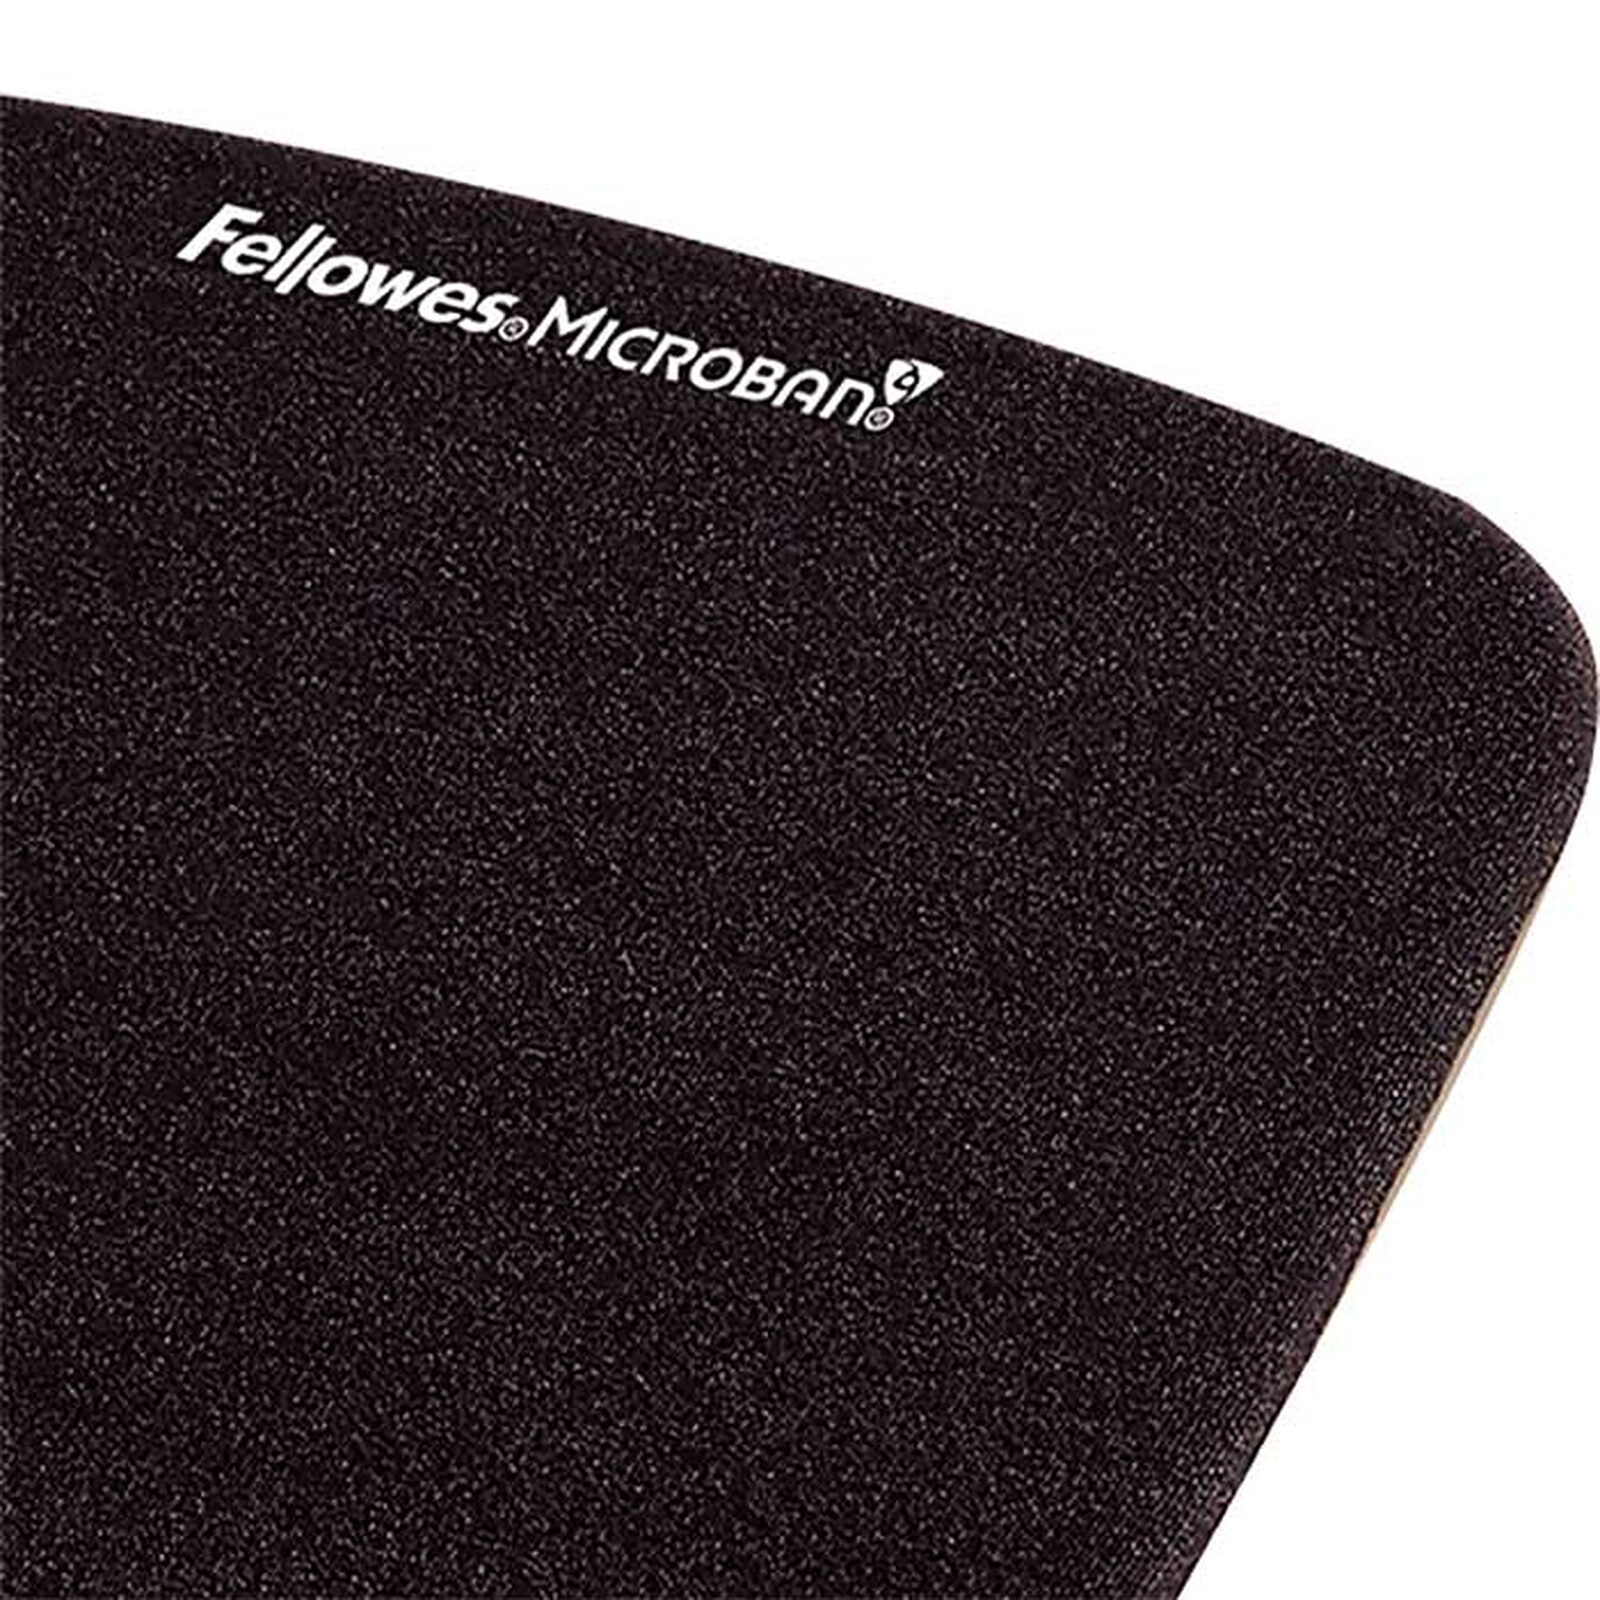 Kensington tapis de souris avec repose-poignet en gel (coloris noir) - Tapis  de souris - Garantie 3 ans LDLC